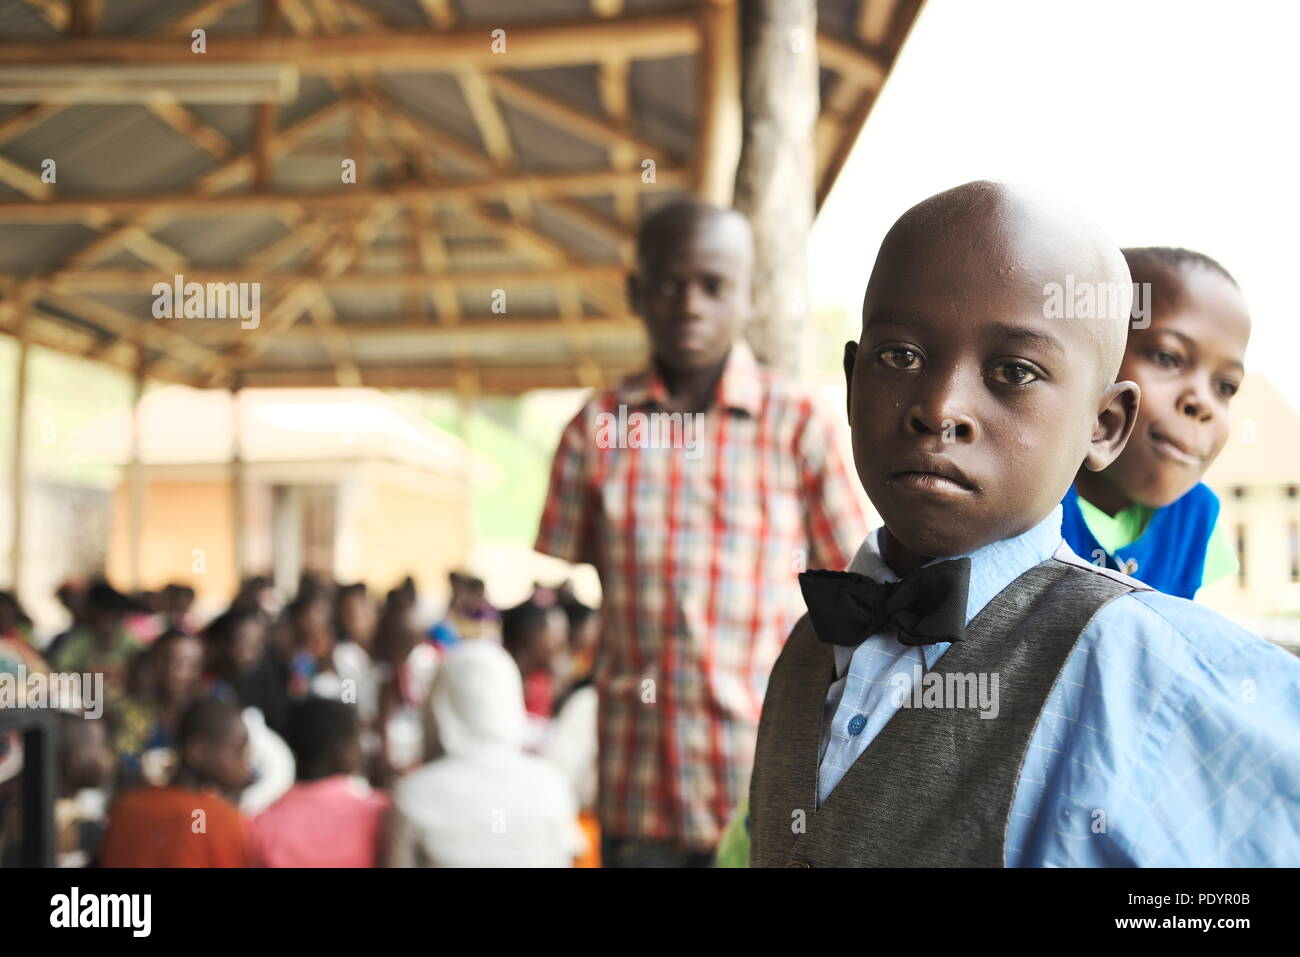 El joven ugandés está mejor parado en su domingo, mirando la cámara con un grupo de otros niños africanos jóvenes esperando la atención del hospital Foto de stock